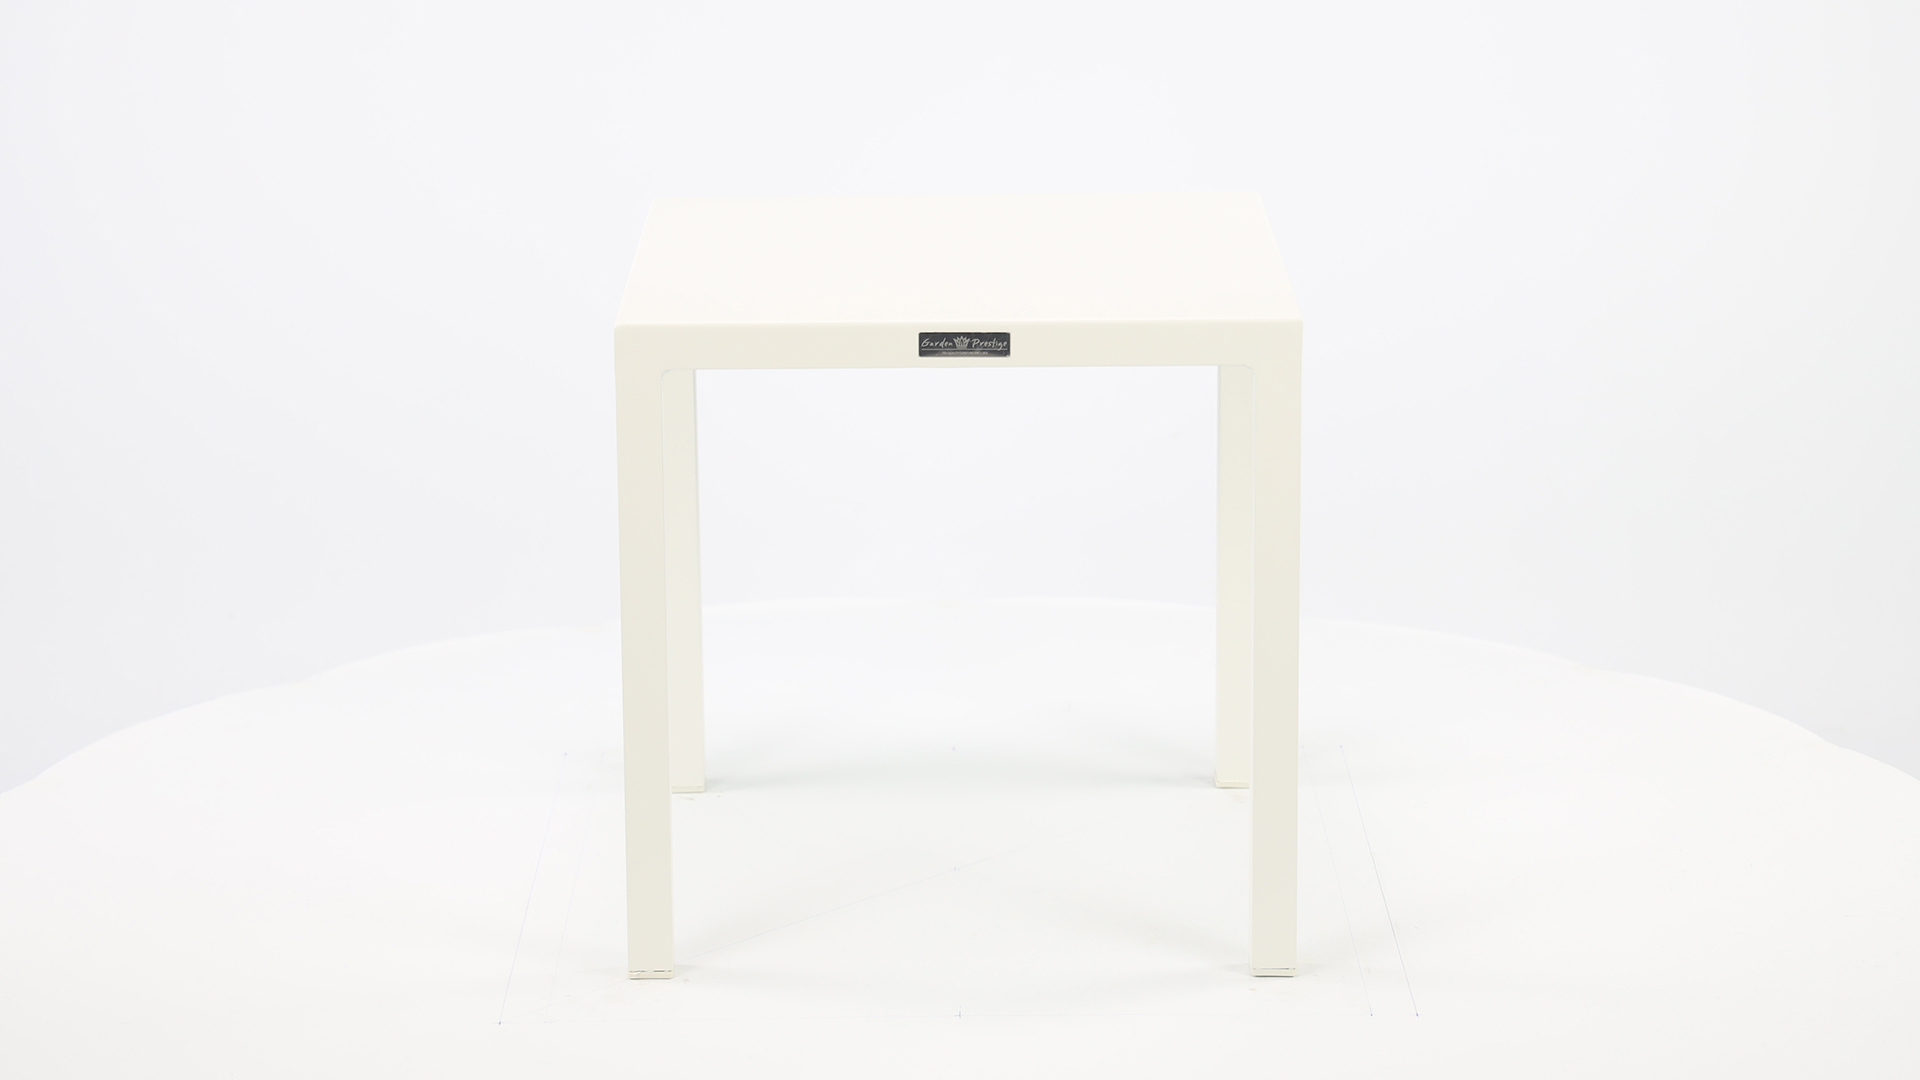 Alu Side Table Palma White Mat 45 x 45 x H45cm